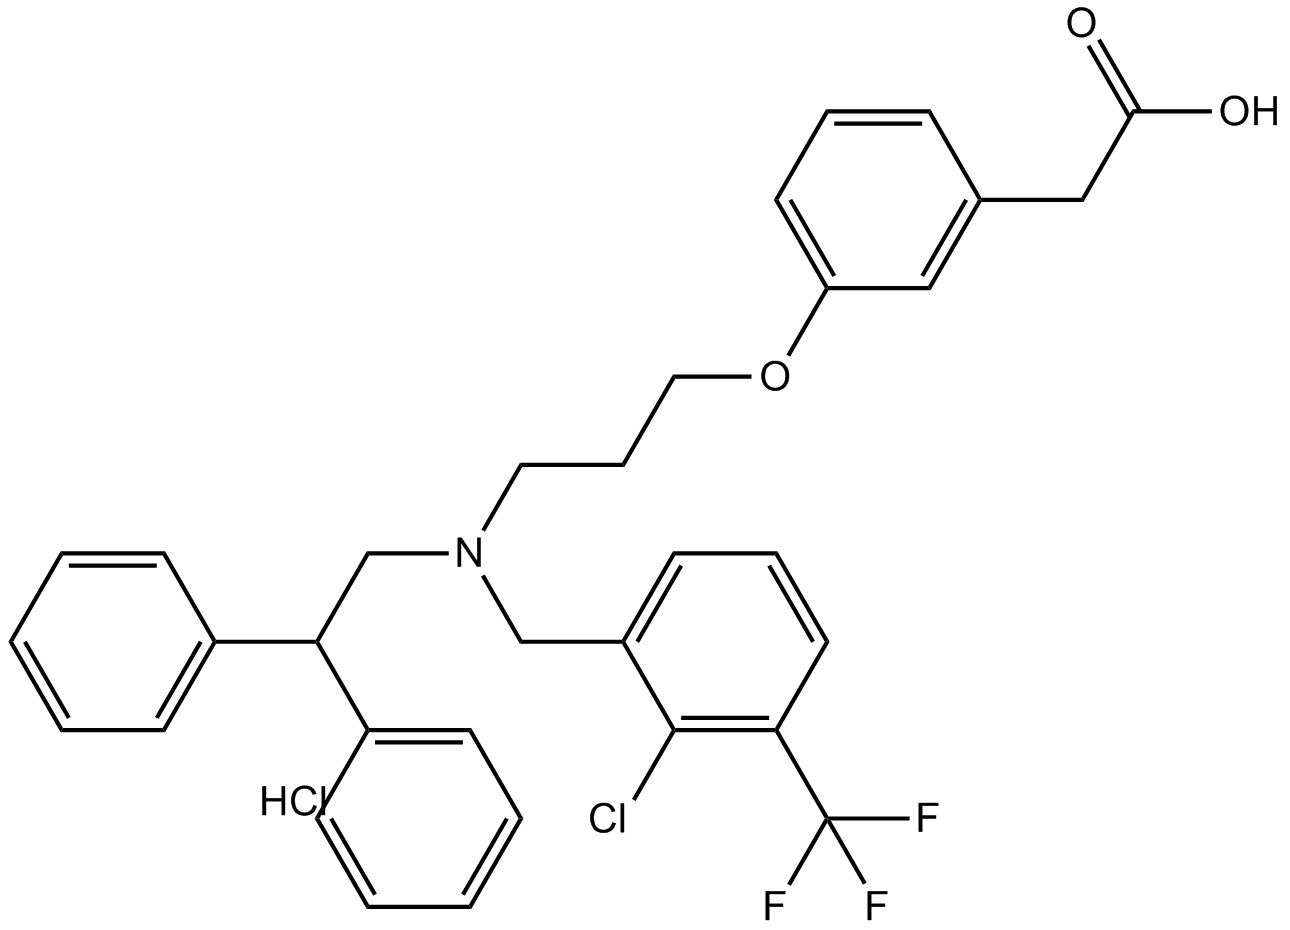 GW3965 HCl 化学構造